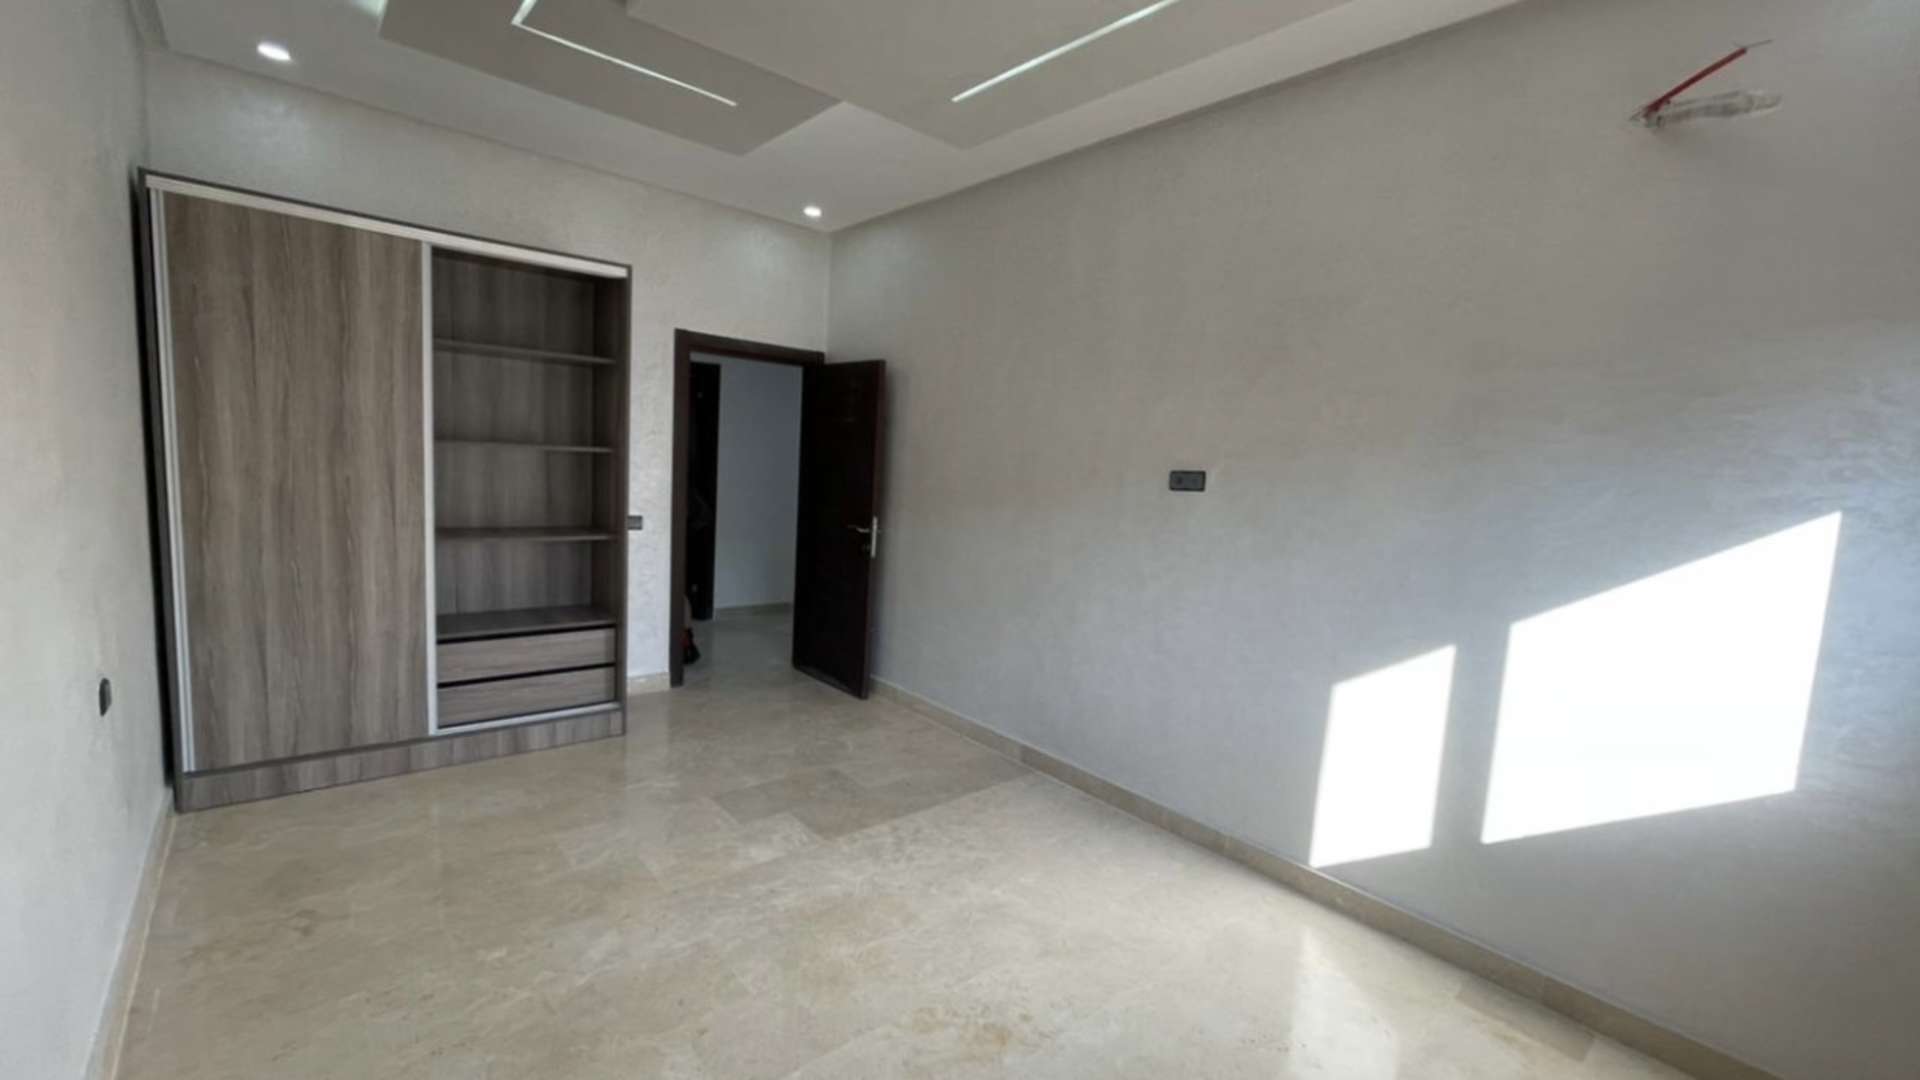 Location longue durée ,Appartement,Appartement 3ch salon neuf et vide en location longue durée à Targa Marrakech,Marrakech,Targa